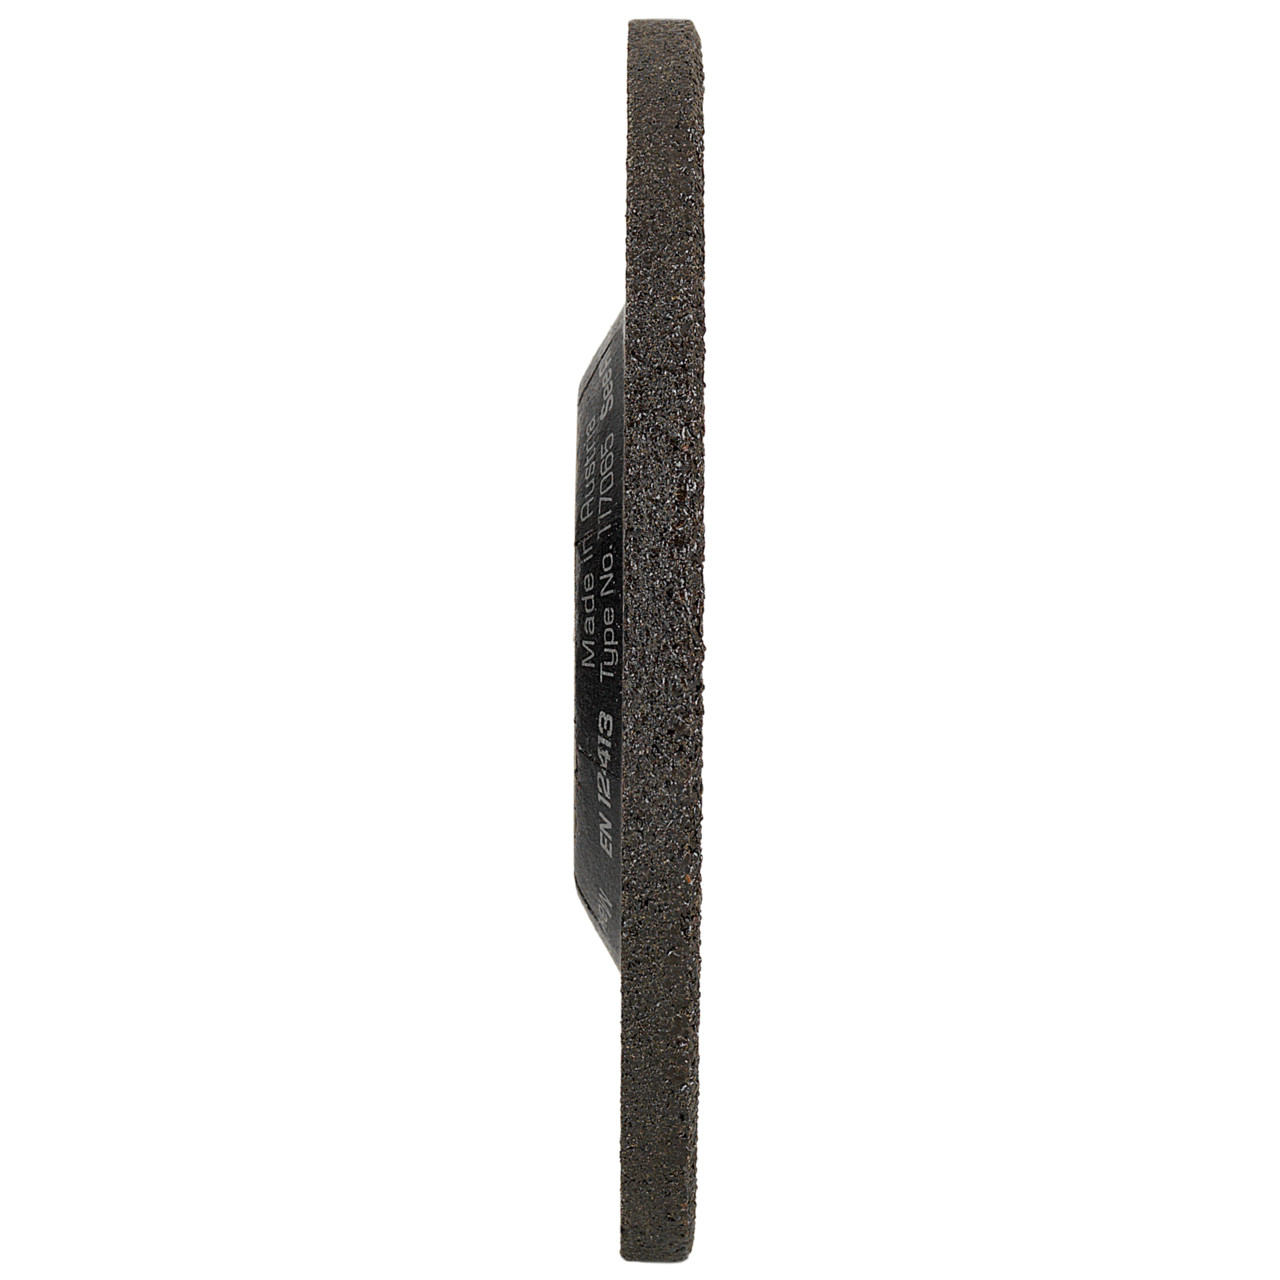 TYROLIT slijpschijf DxUxH 115x7x22.23 Voor roestvrij staal, vorm: 27 - offset-uitvoering, Art. 117065